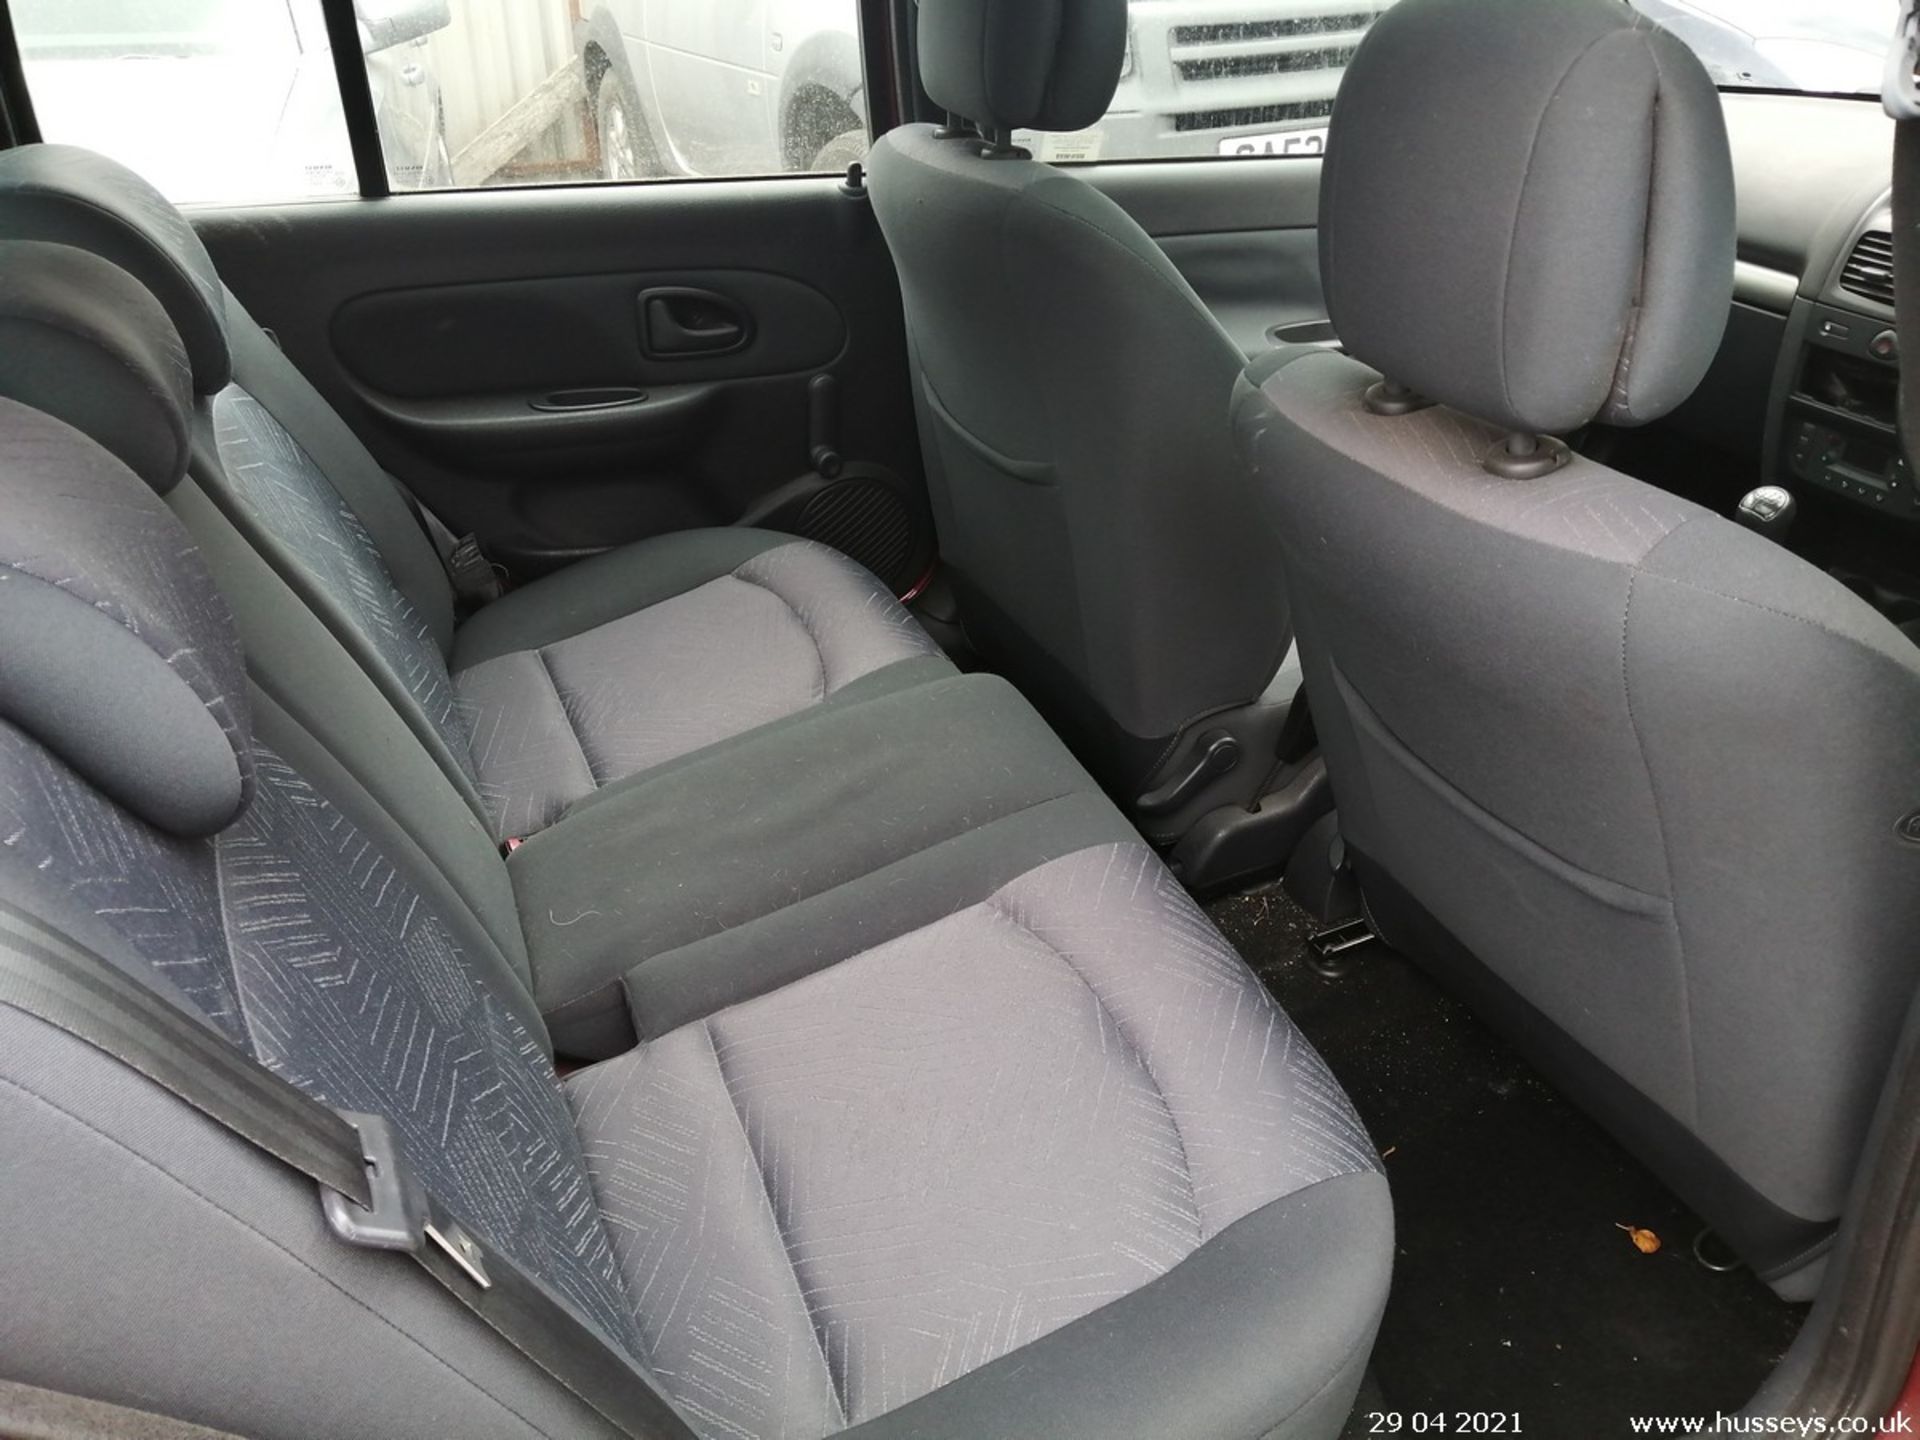 03/53 RENAULT CLIO DYNAMIQUE 16V - 1149cc 5dr Hatchback (Red, 41k) - Image 12 of 12